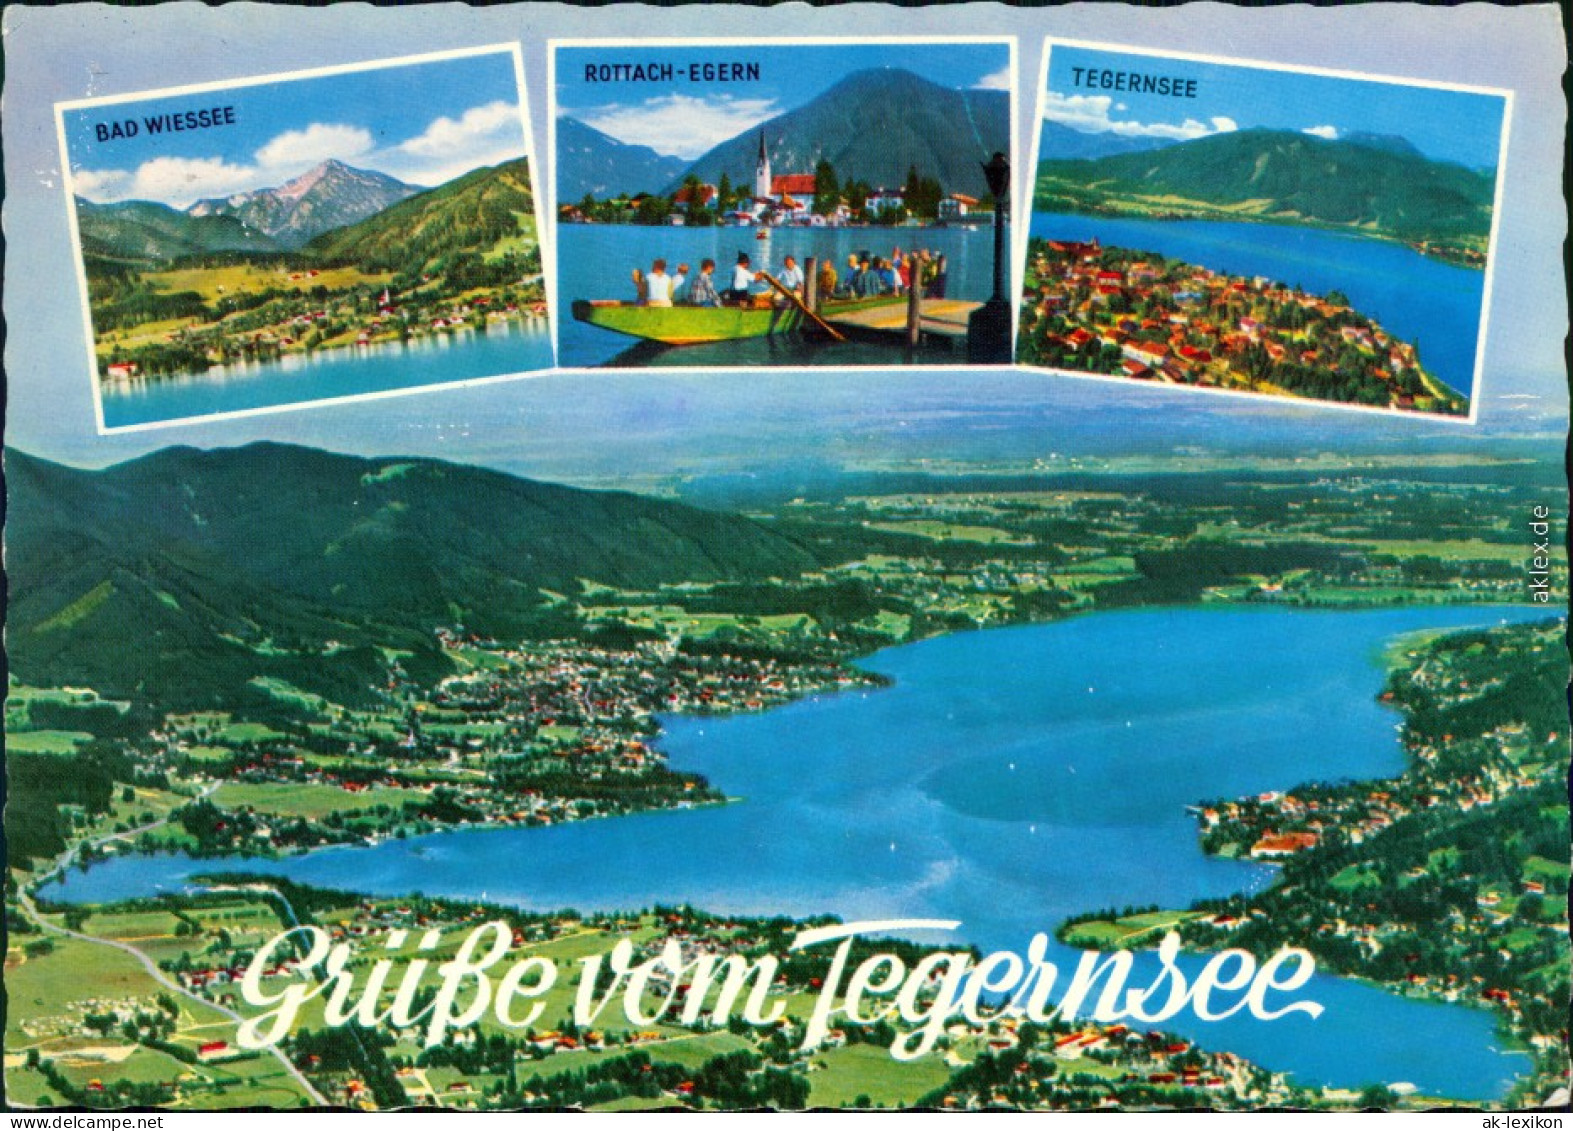 Tegernsee (Stadt) Luftbild Tegernsee, Bad Wiessee, Rottach-Egern 1975 - Tegernsee